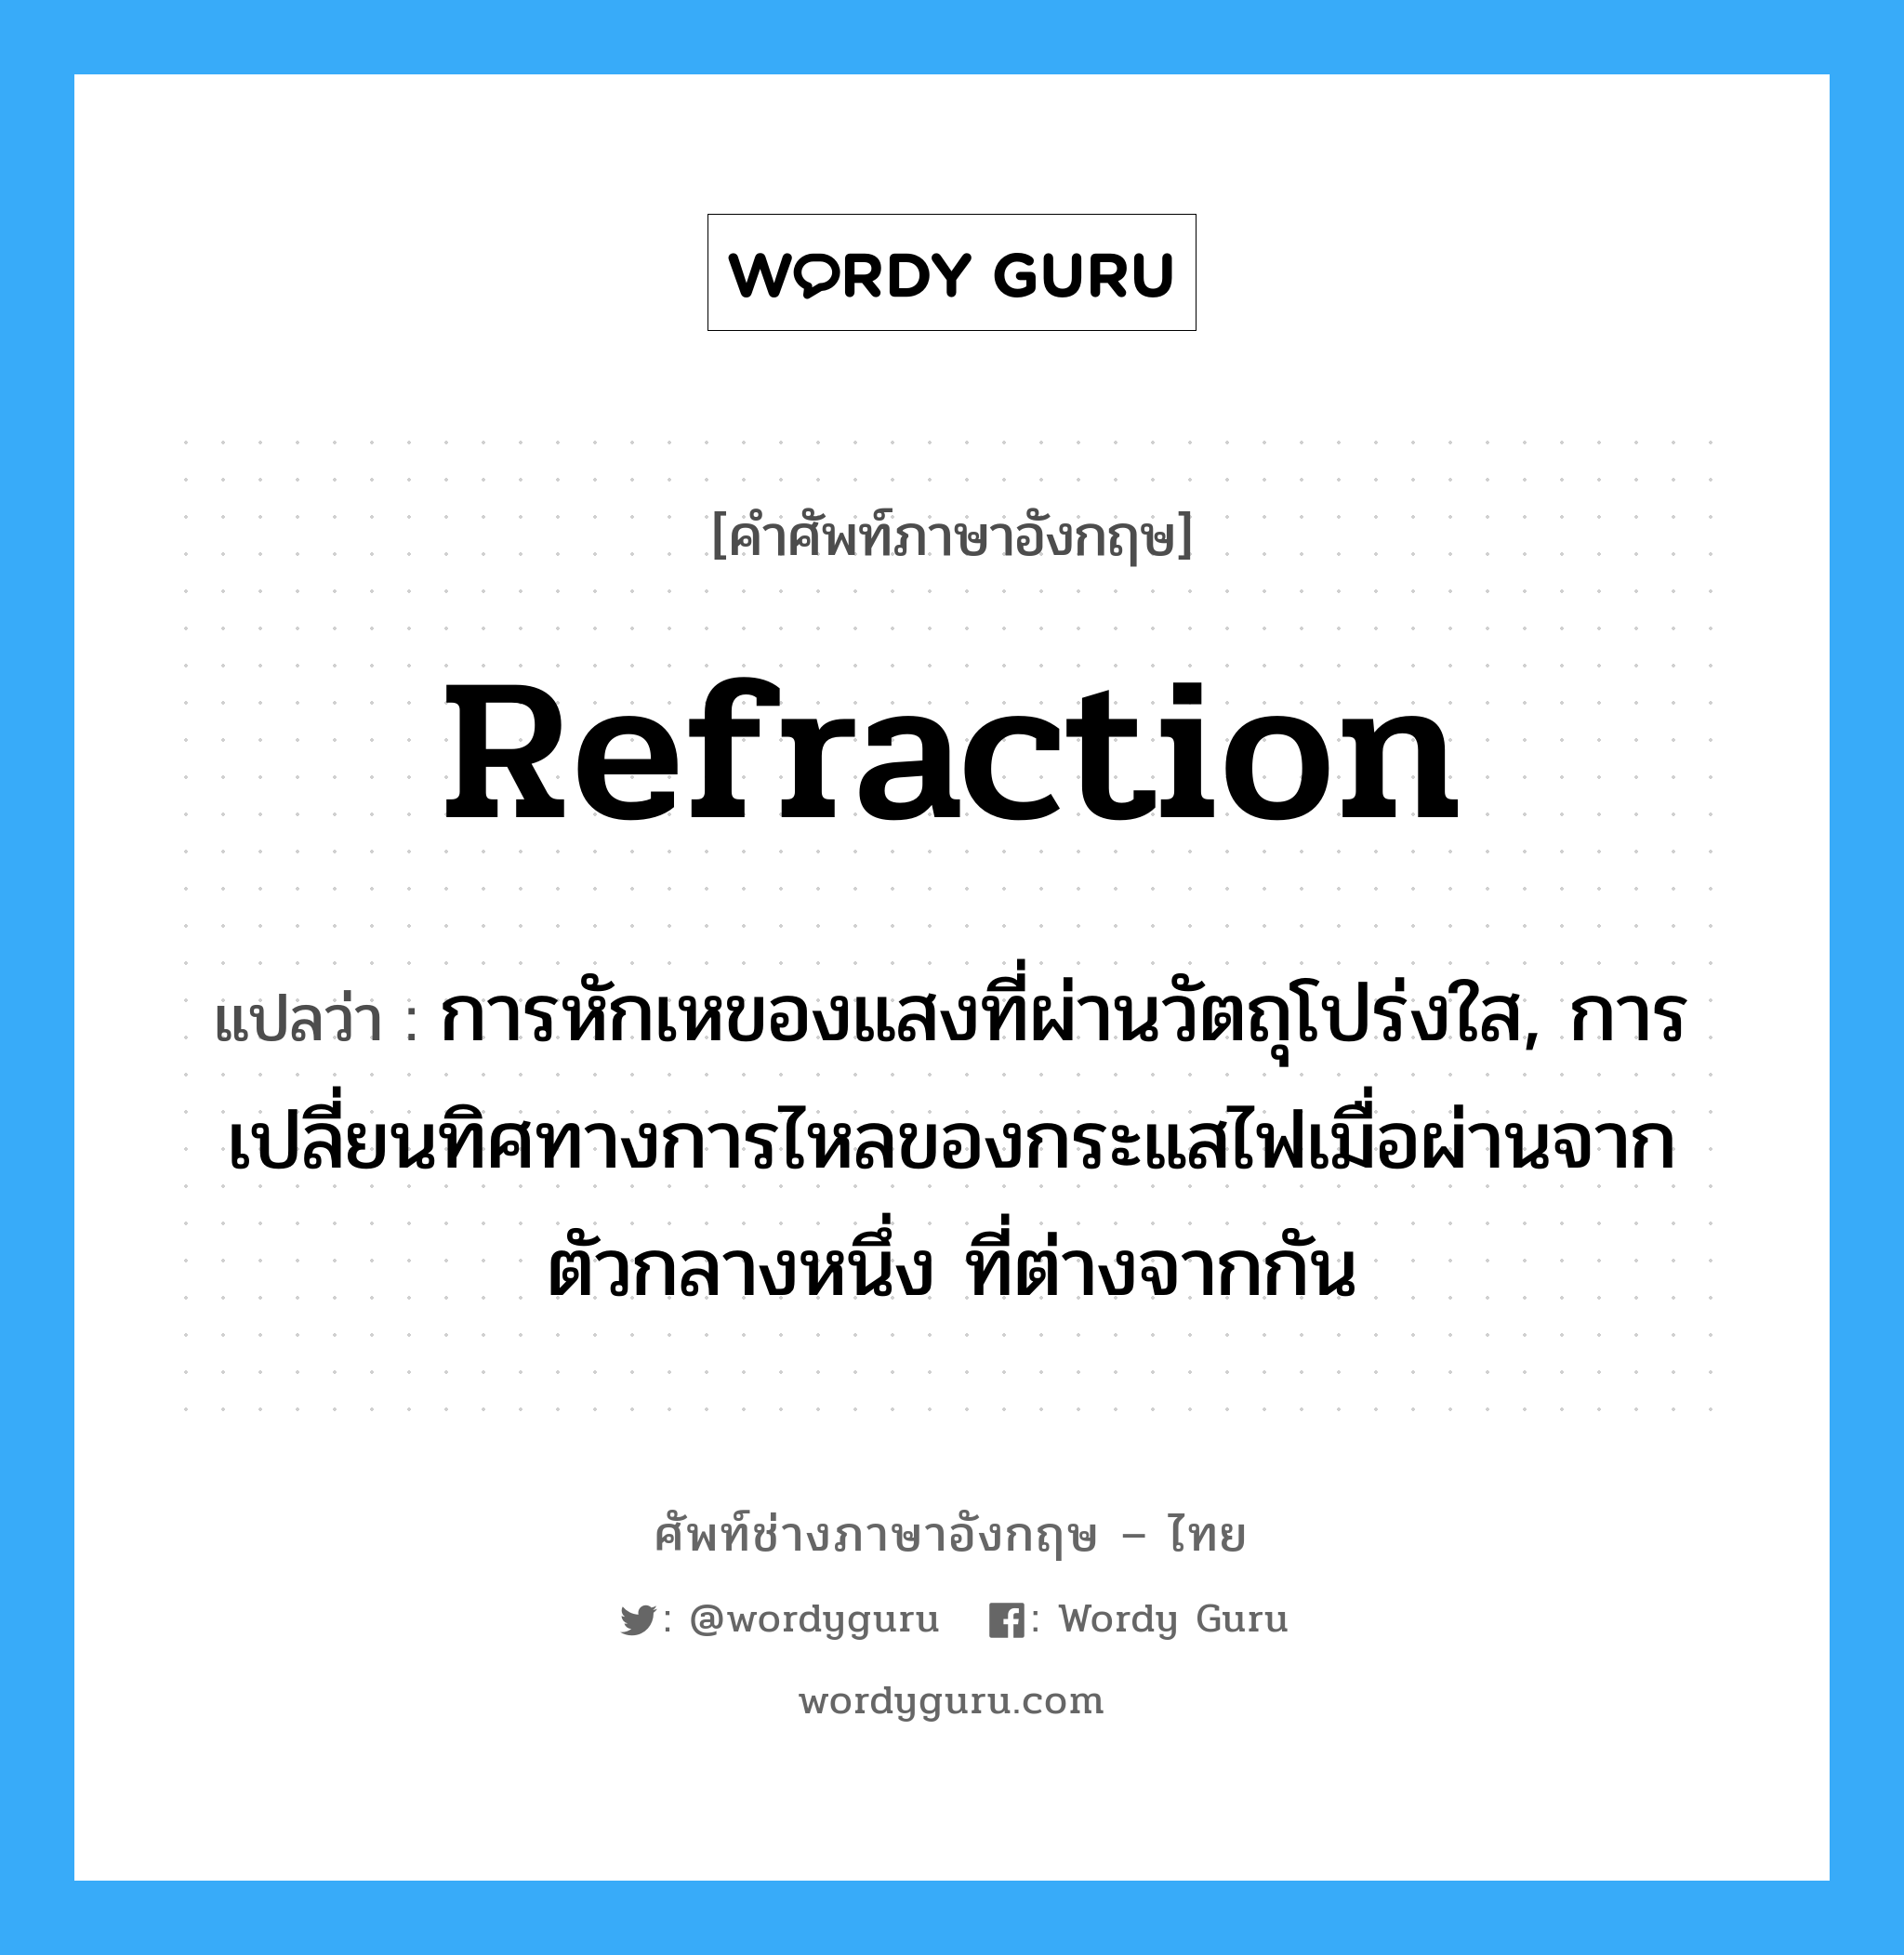 refraction แปลว่า?, คำศัพท์ช่างภาษาอังกฤษ - ไทย refraction คำศัพท์ภาษาอังกฤษ refraction แปลว่า การหักเหของแสงที่ผ่านวัตถุโปร่งใส, การเปลี่ยนทิศทางการไหลของกระแสไฟเมื่อผ่านจากตัวกลางหนึ่ง ที่ต่างจากกัน